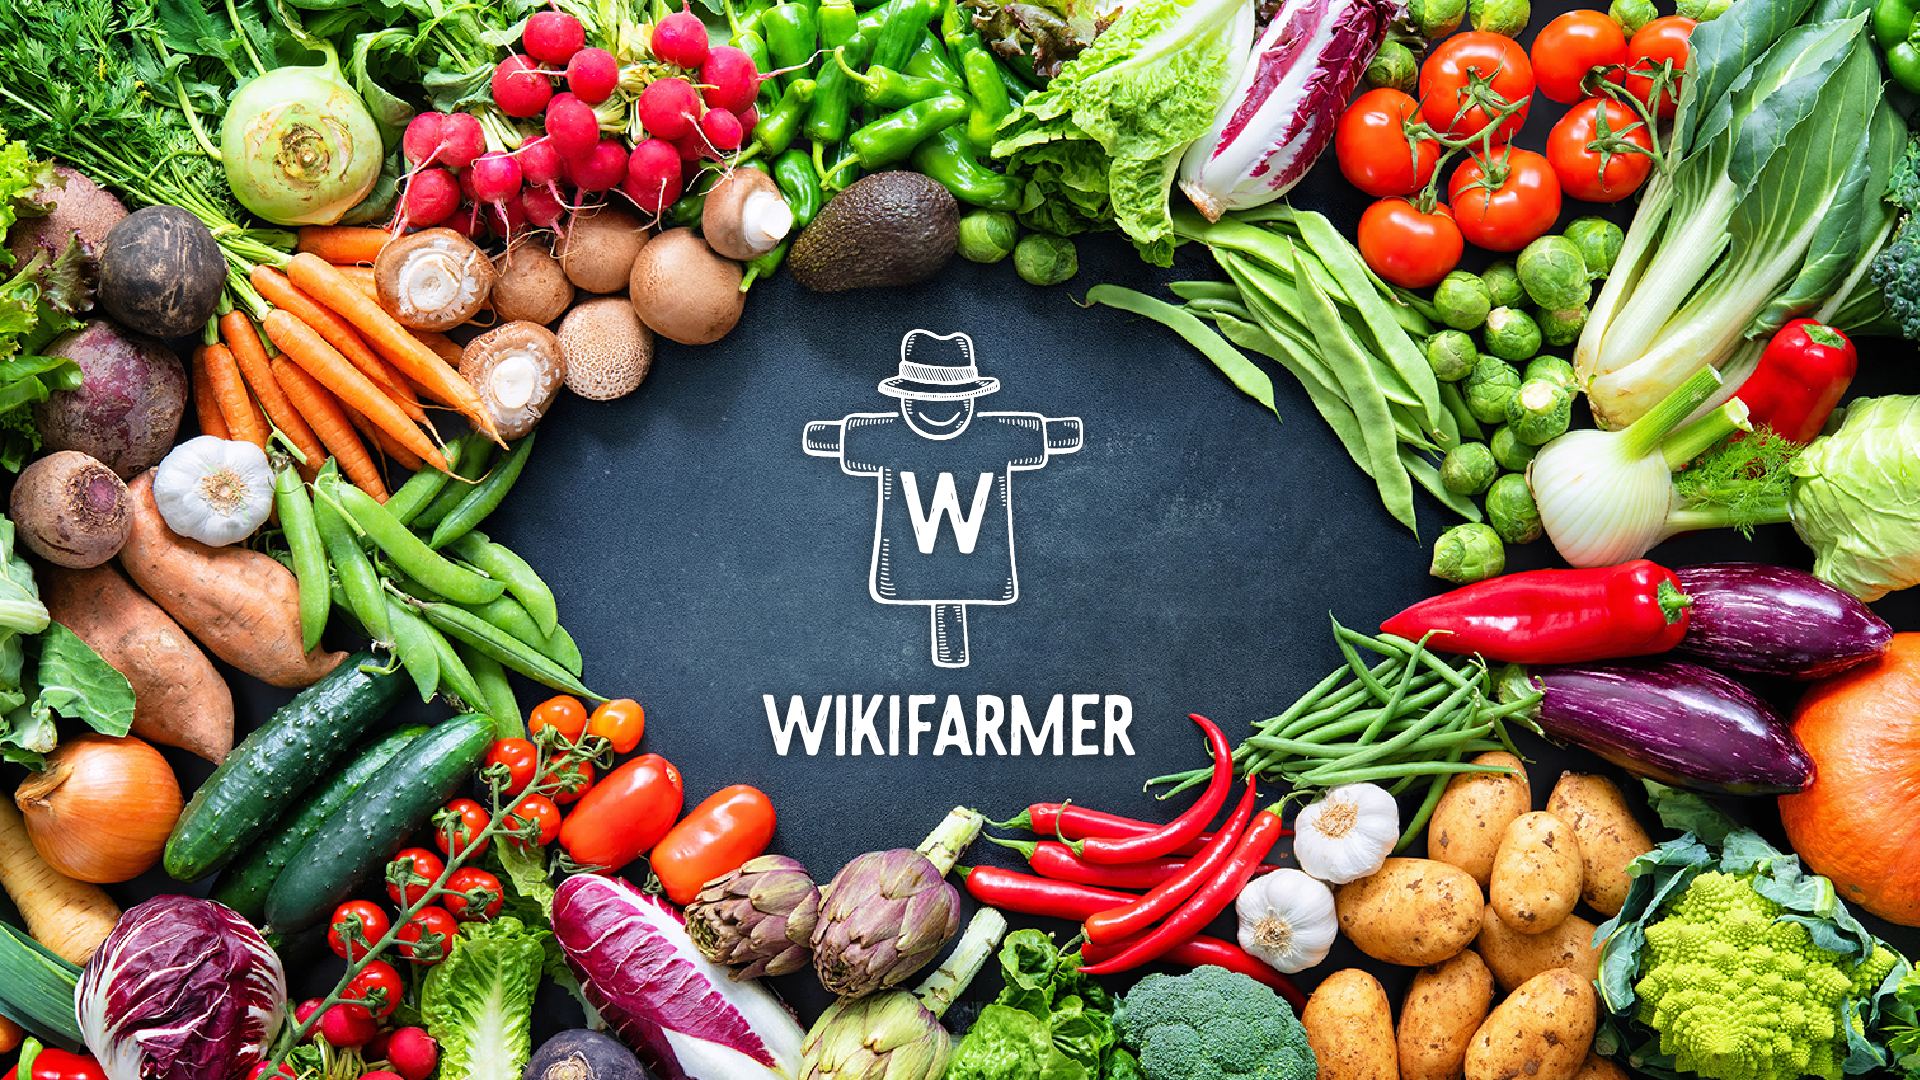 Wikifarmer : Οι top αναζητήσεις αγροτικών προϊόντων στην Ελλάδα για το 2020